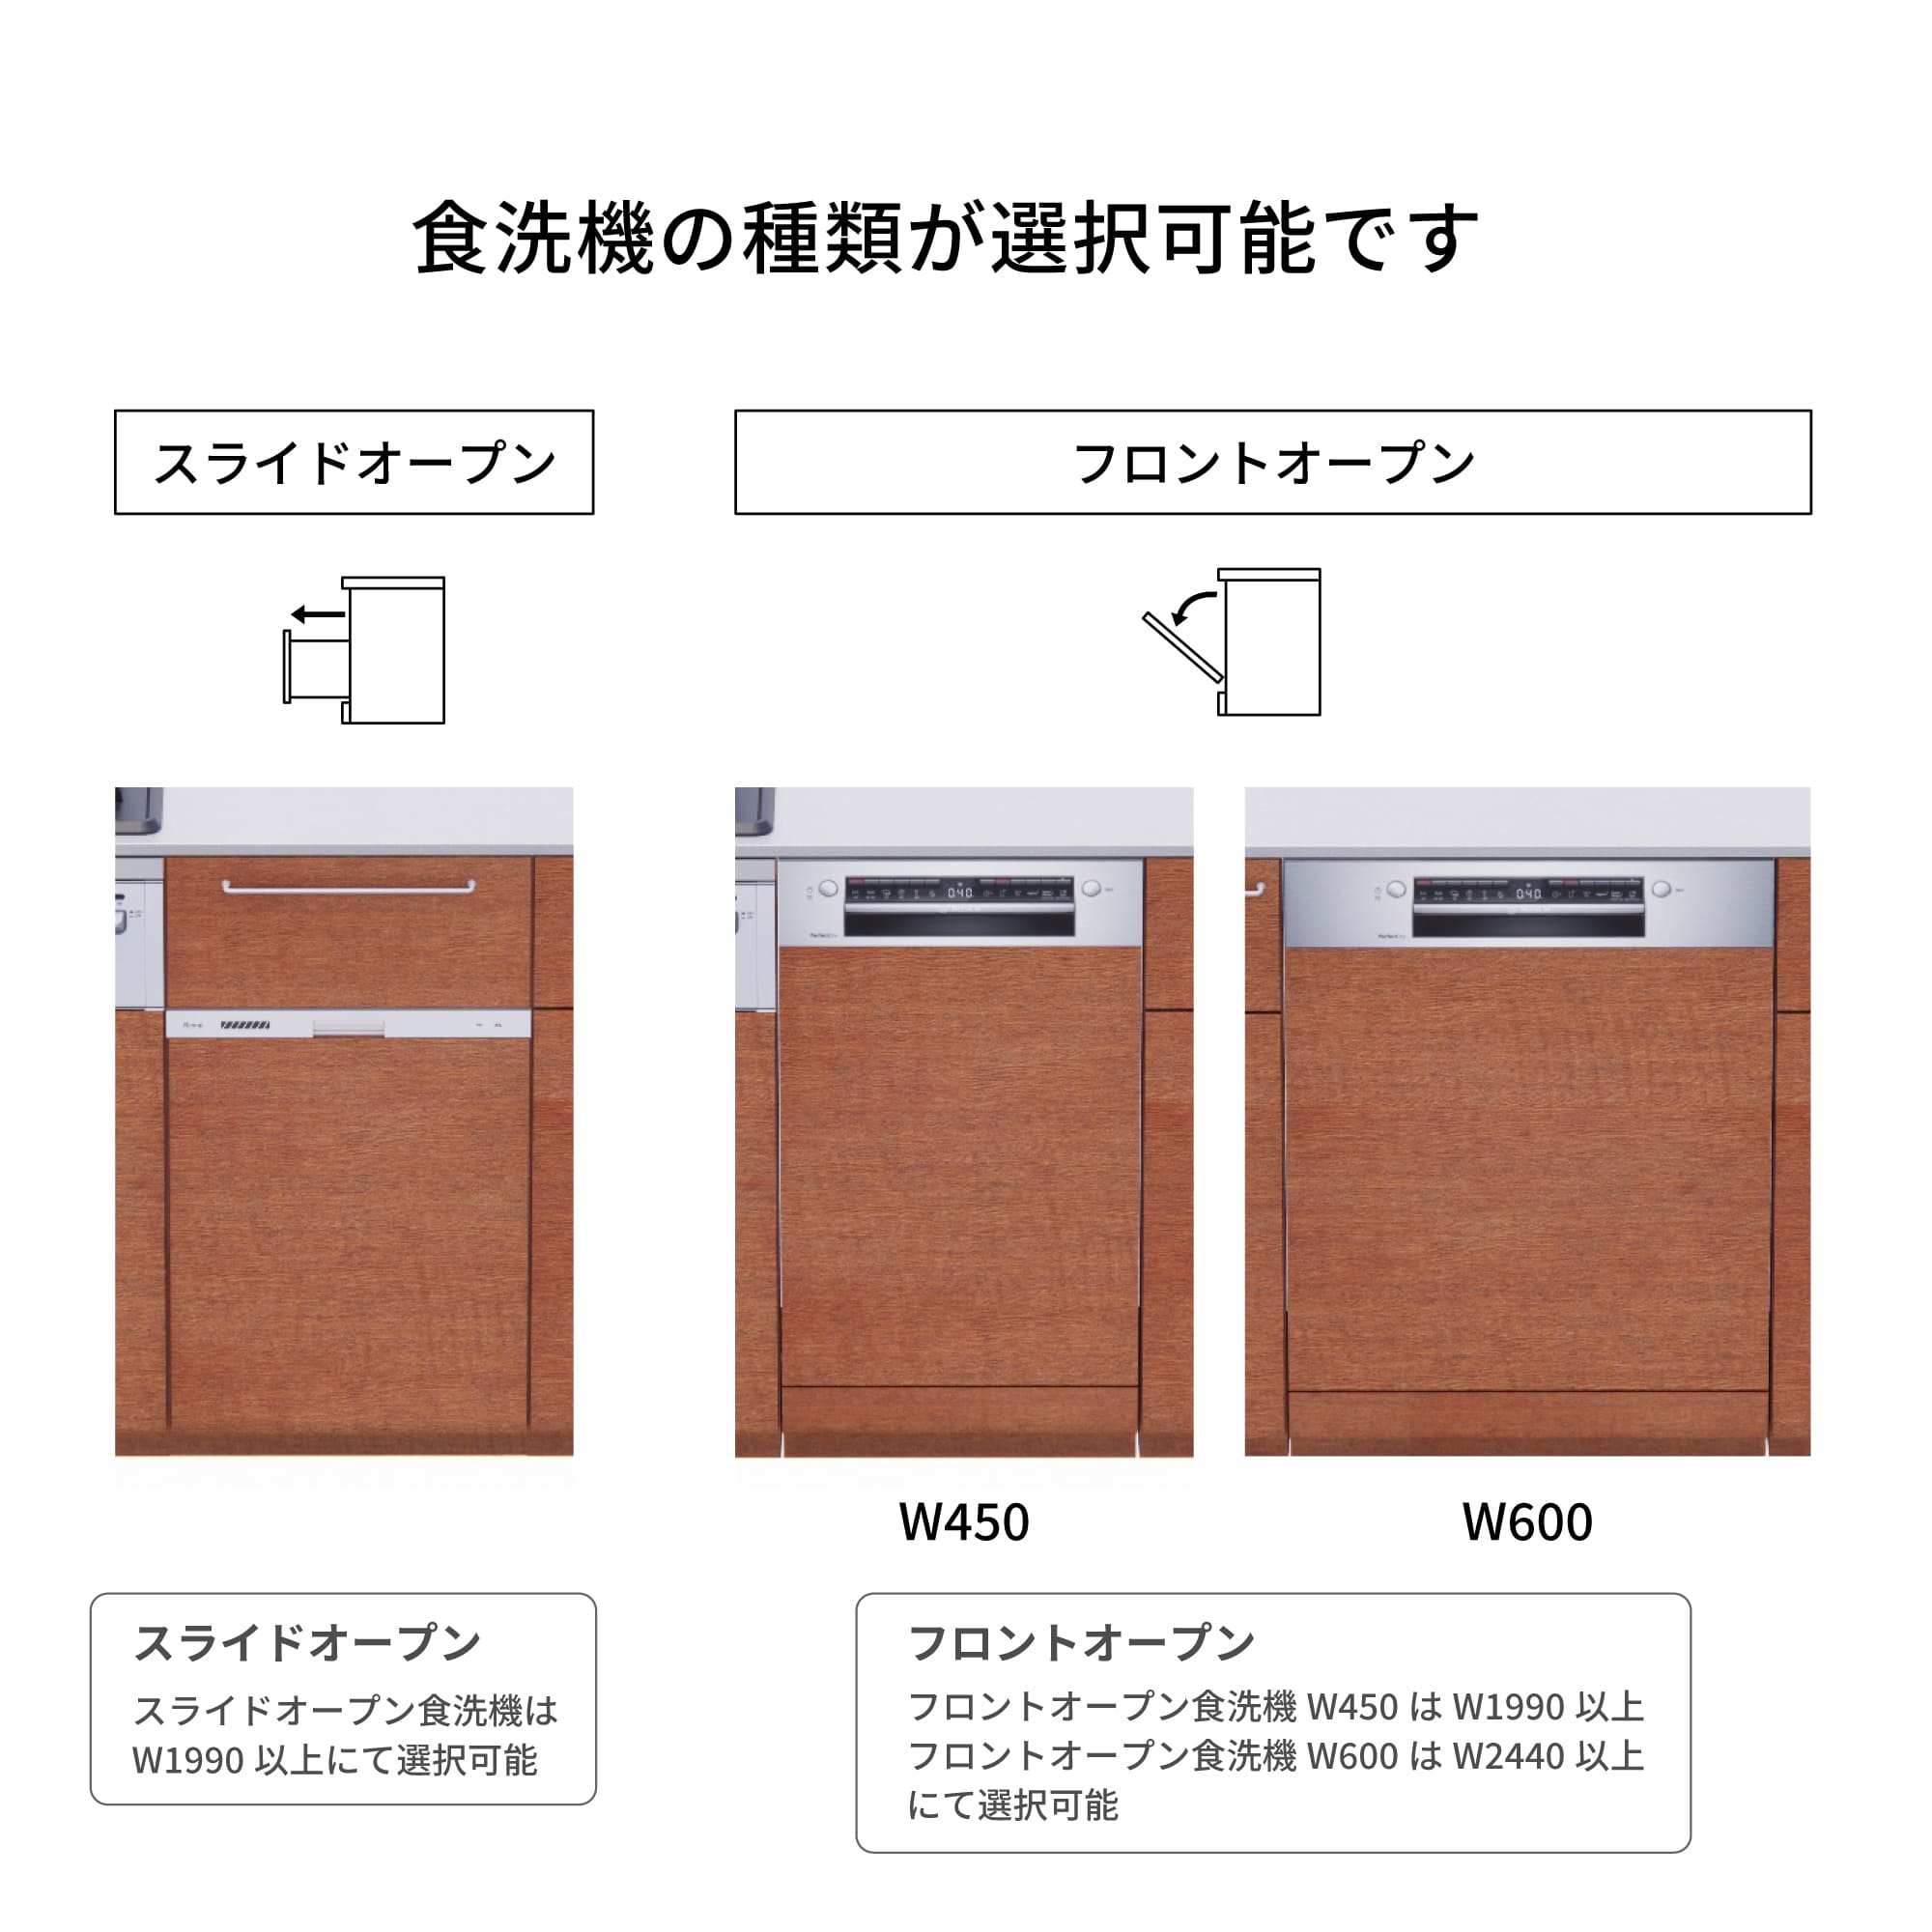 木製システムキッチン 対面型 W2440～2740・コンロなし / オーブンなし / 食洗機あり KB-KC022-45-G183 食洗機が選択できます